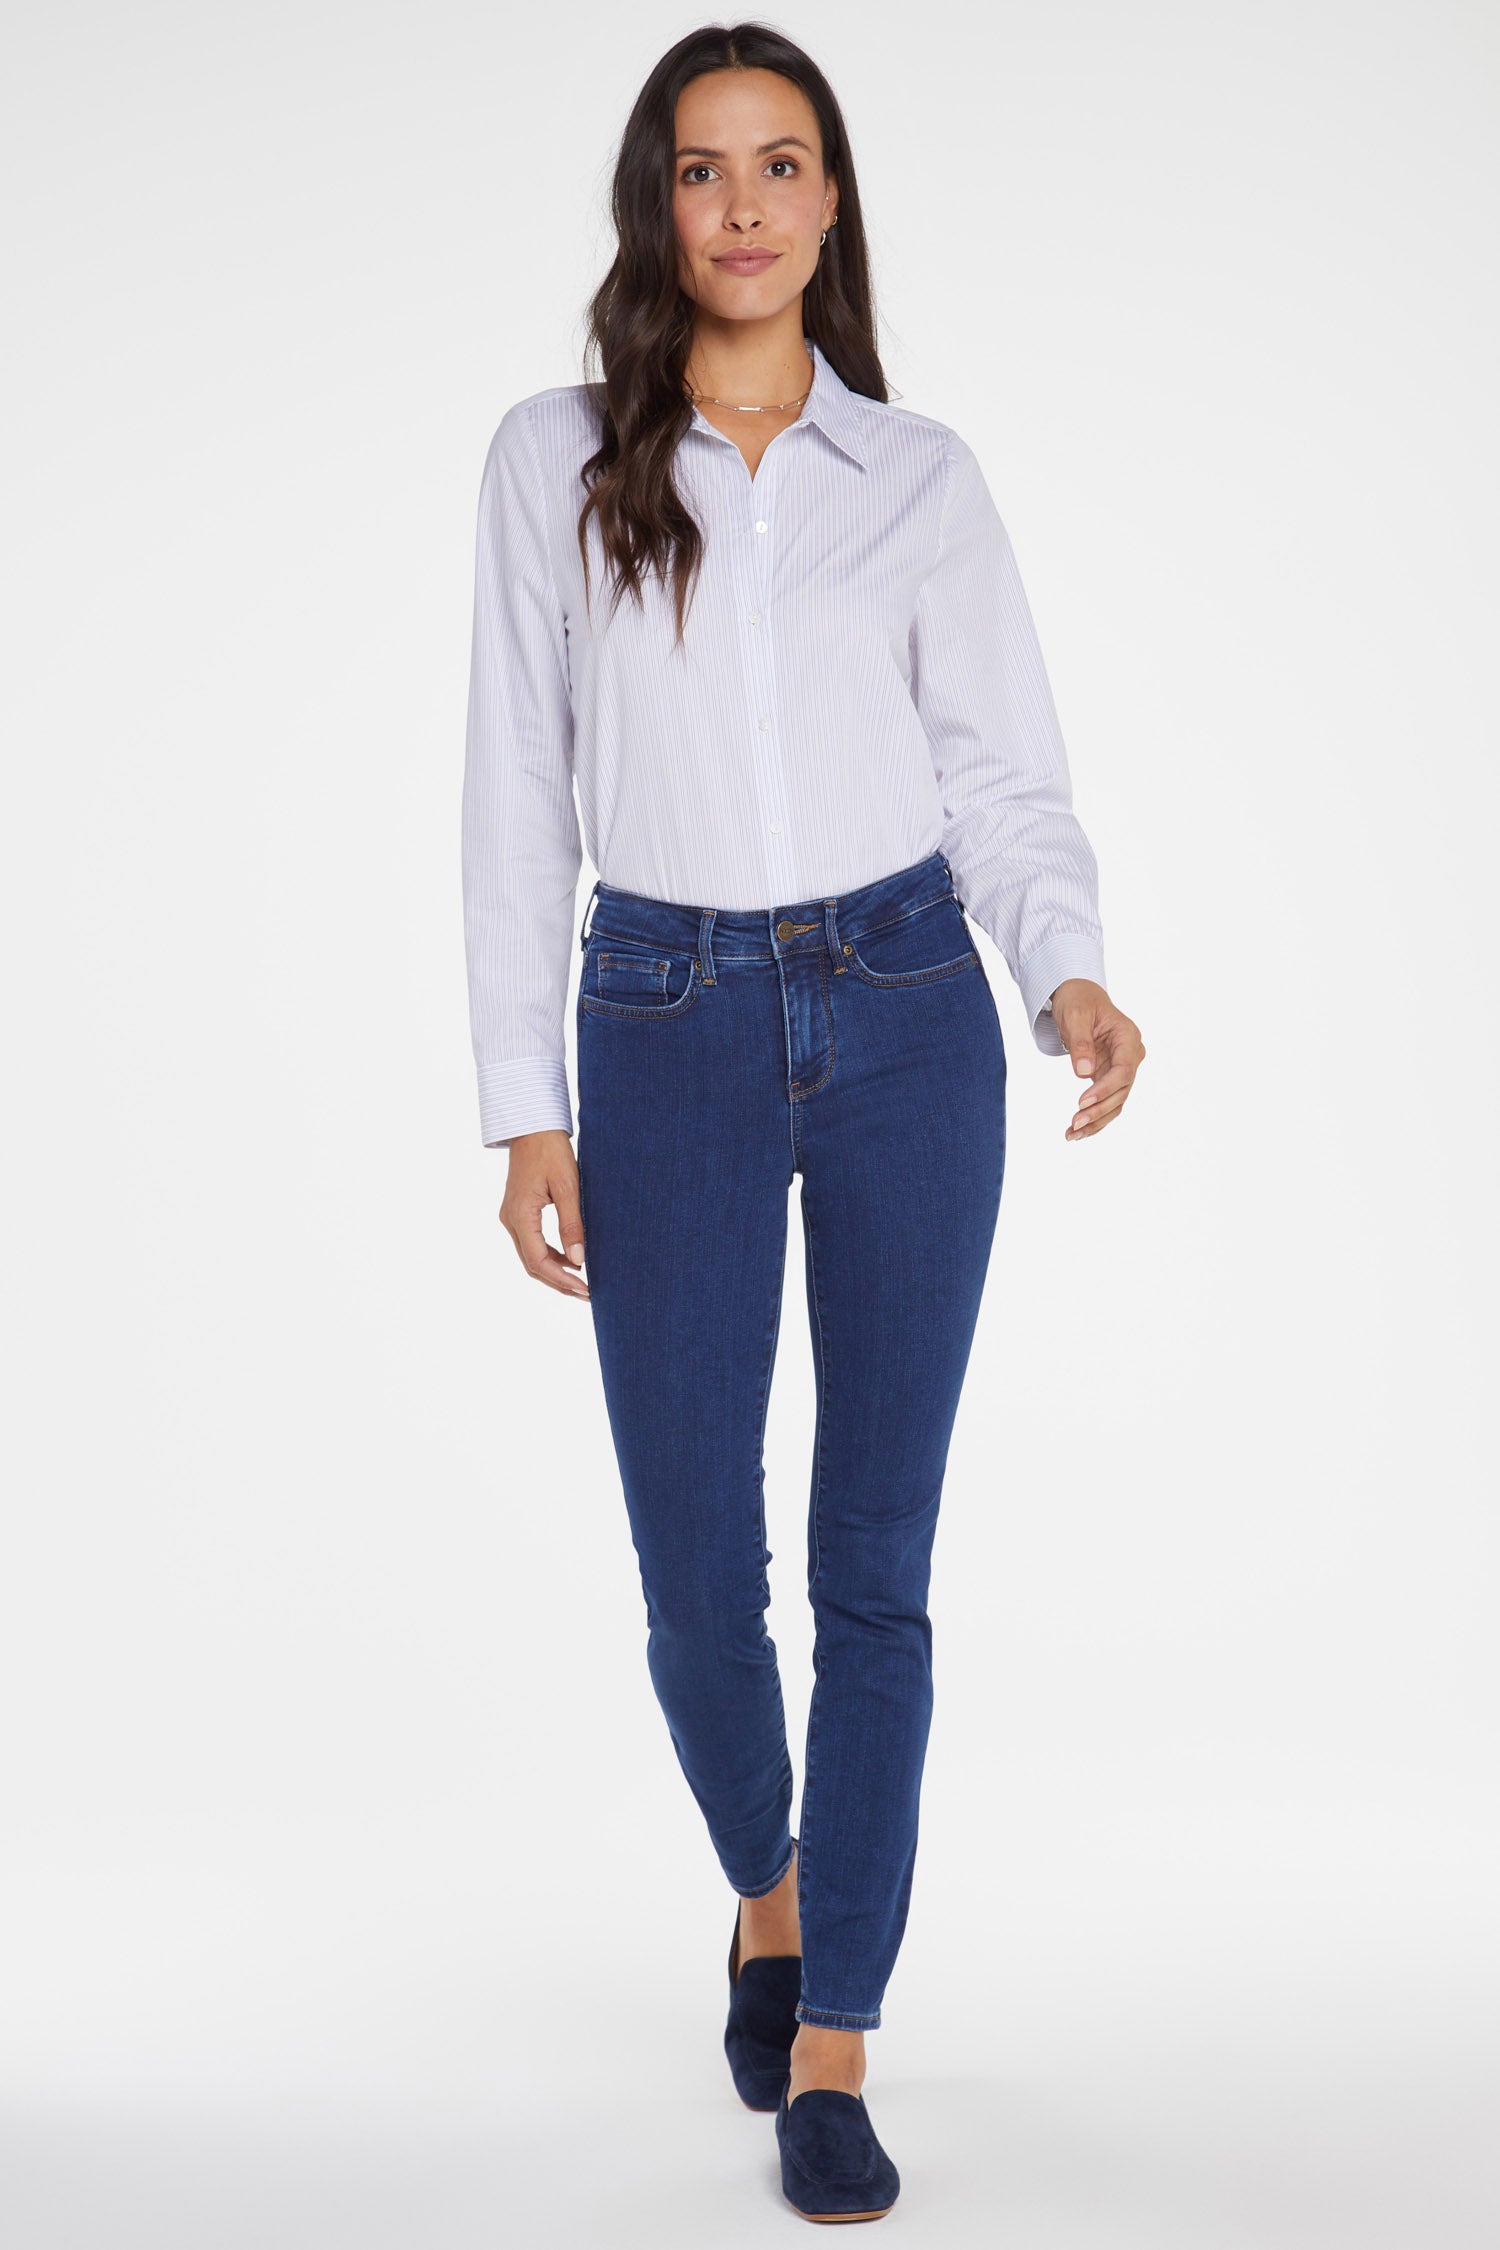 NYDJ Women's Ami High Waist Welt Pocket Ankle Skinny Jeans Grey Size 2 